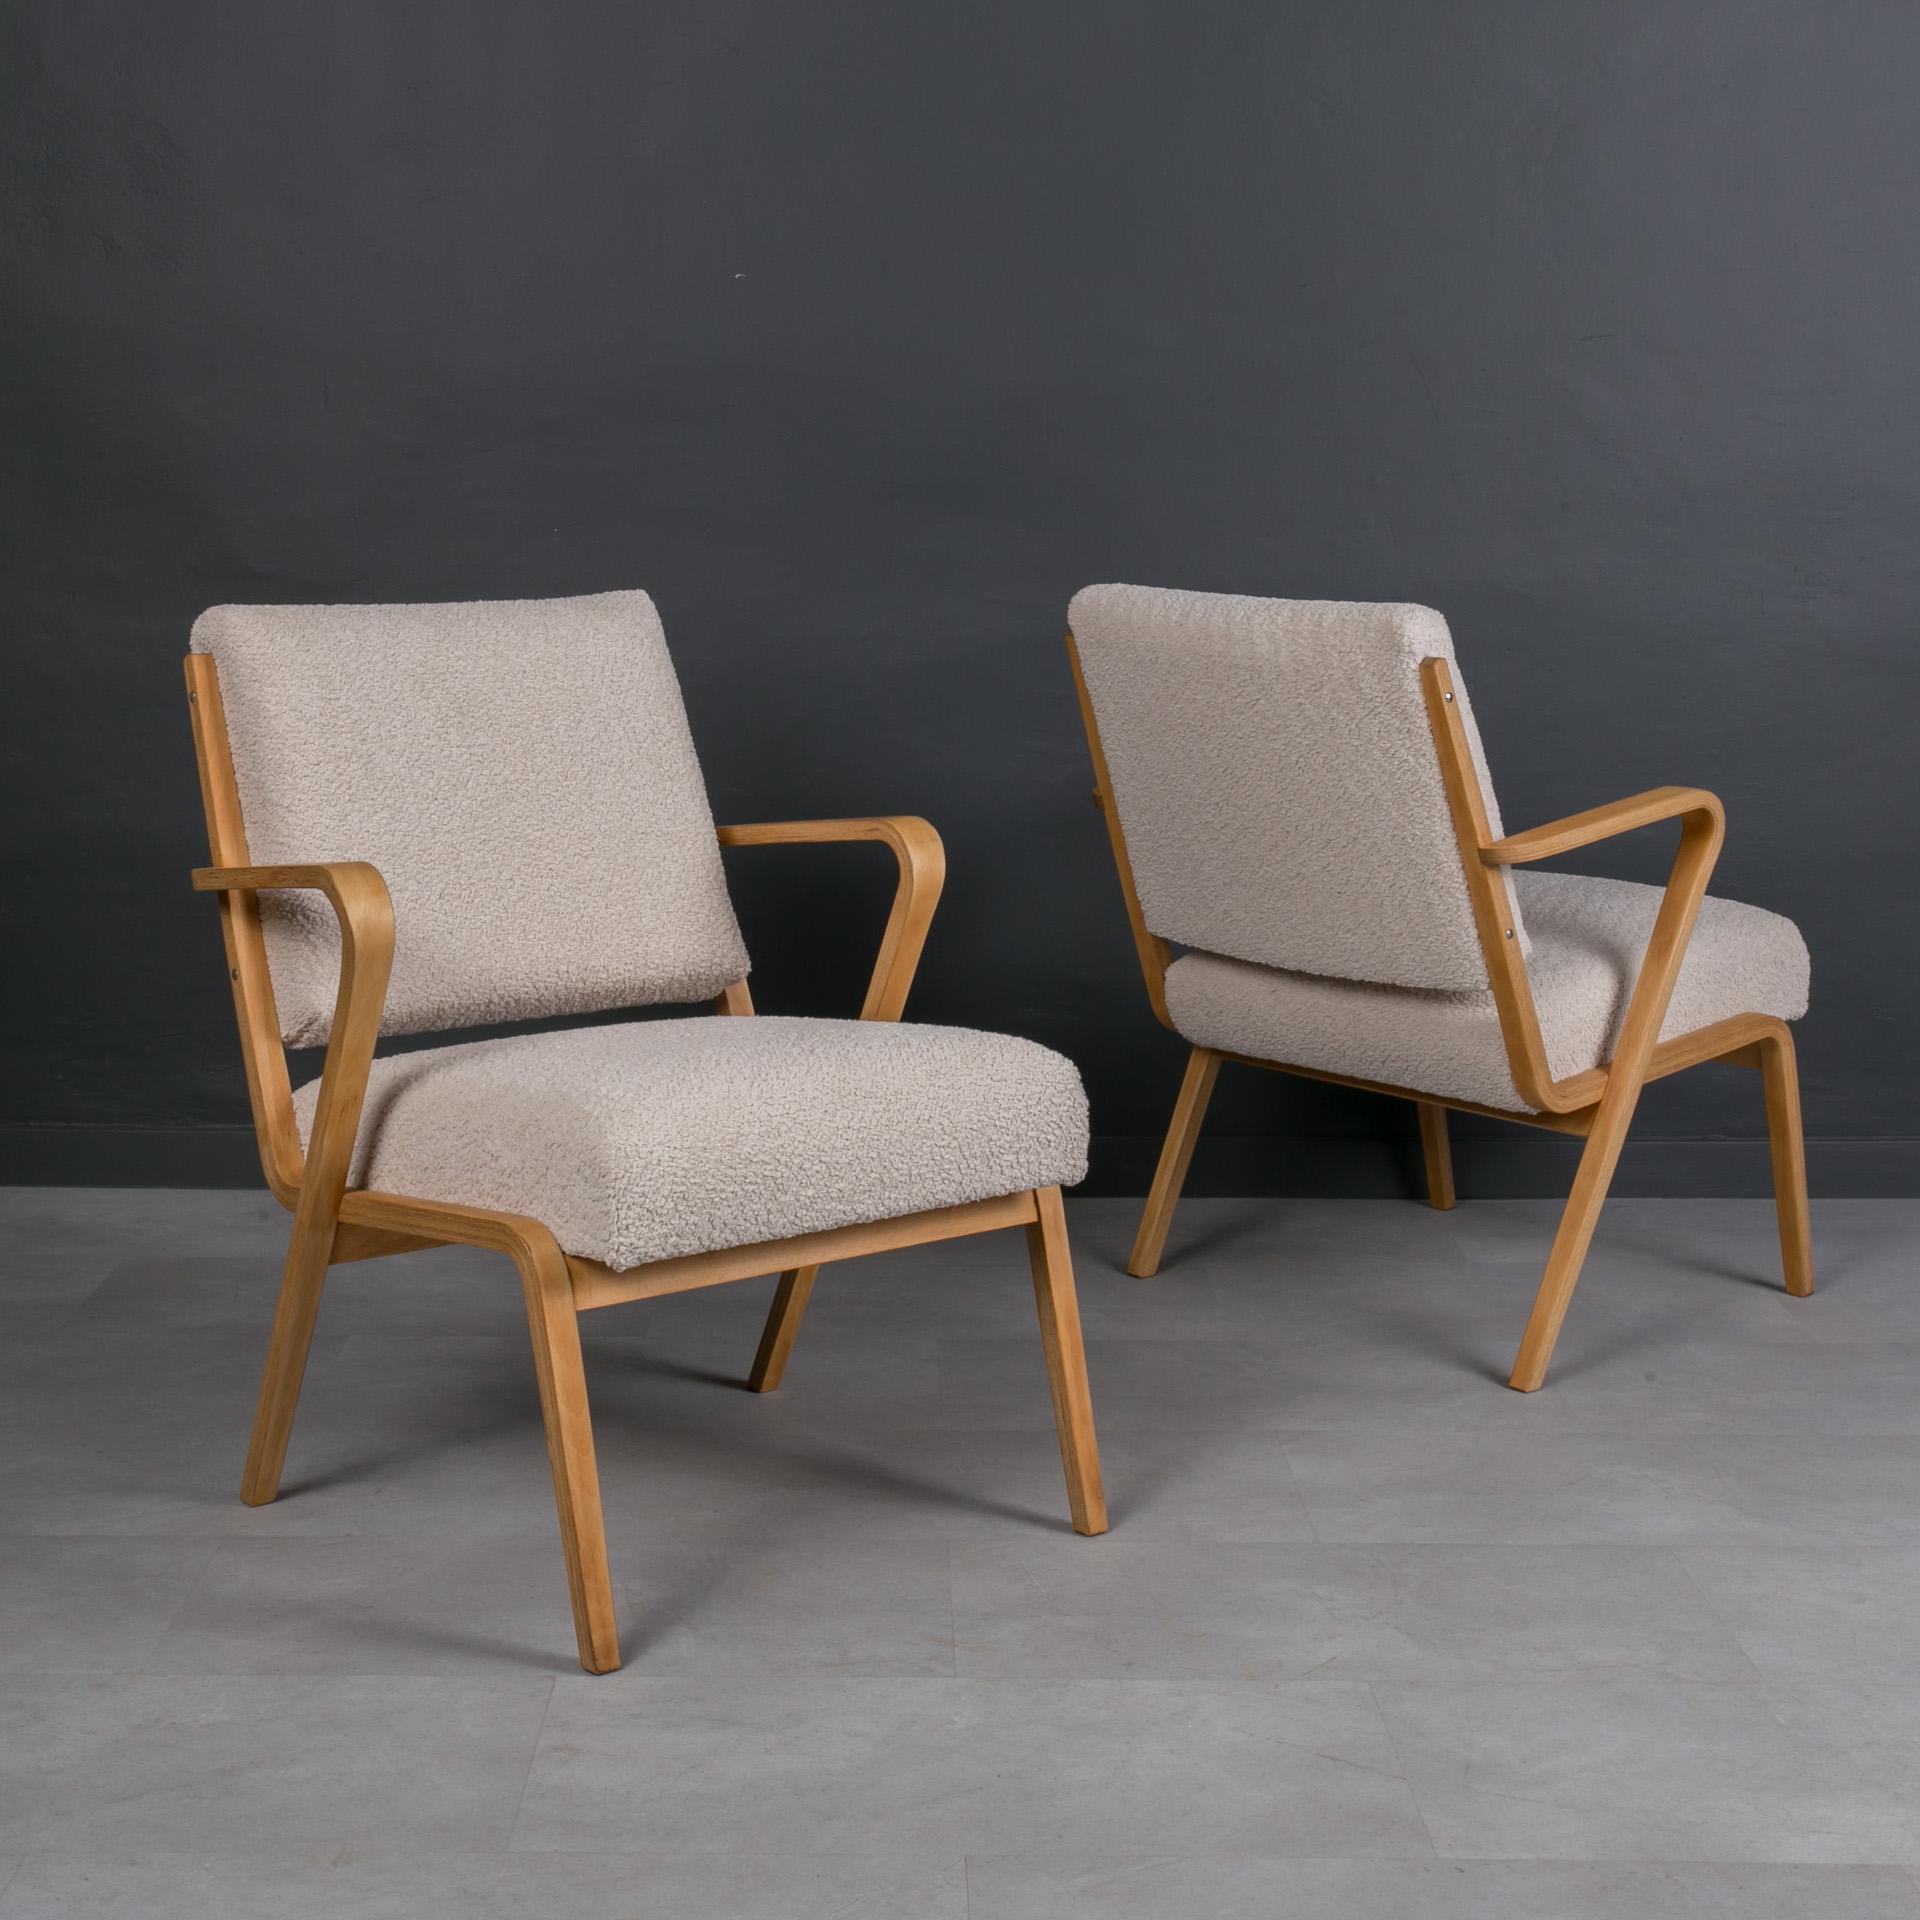 Dieses Set von Sesseln kommt aus Deutschland und wurde um 1960 hergestellt. Entworfen für die Deutschen Werkstätten Hellerau im Jahr 1957 von Selman Selmanagić, einem bosnisch-deutschen Architekten. Die Holzelemente wurden gereinigt und mit